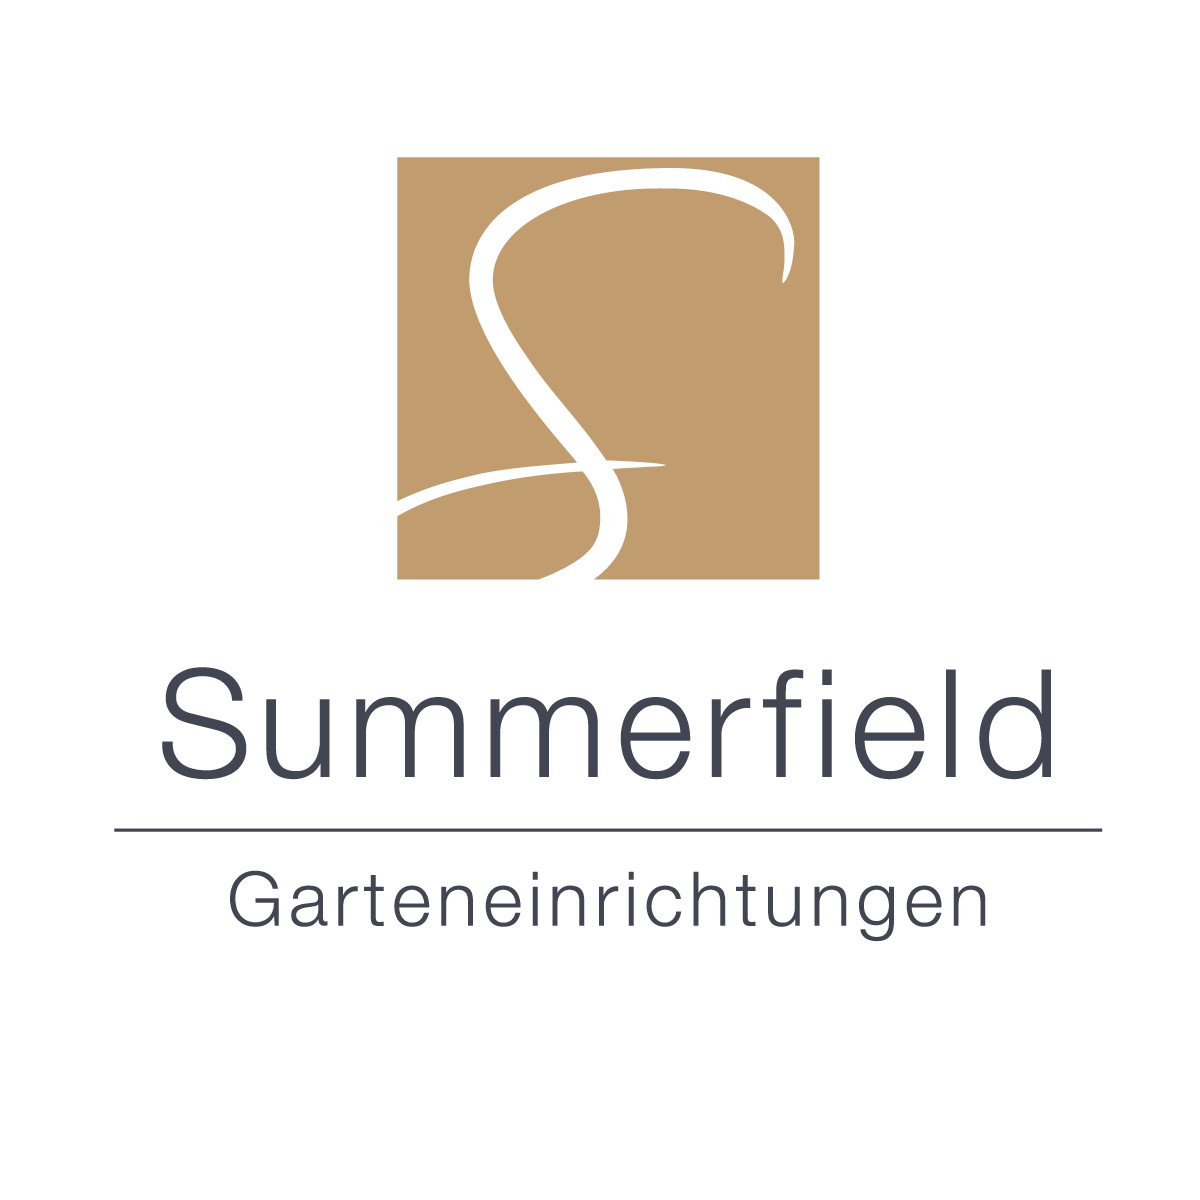 Redesign des Summerfield-Logos